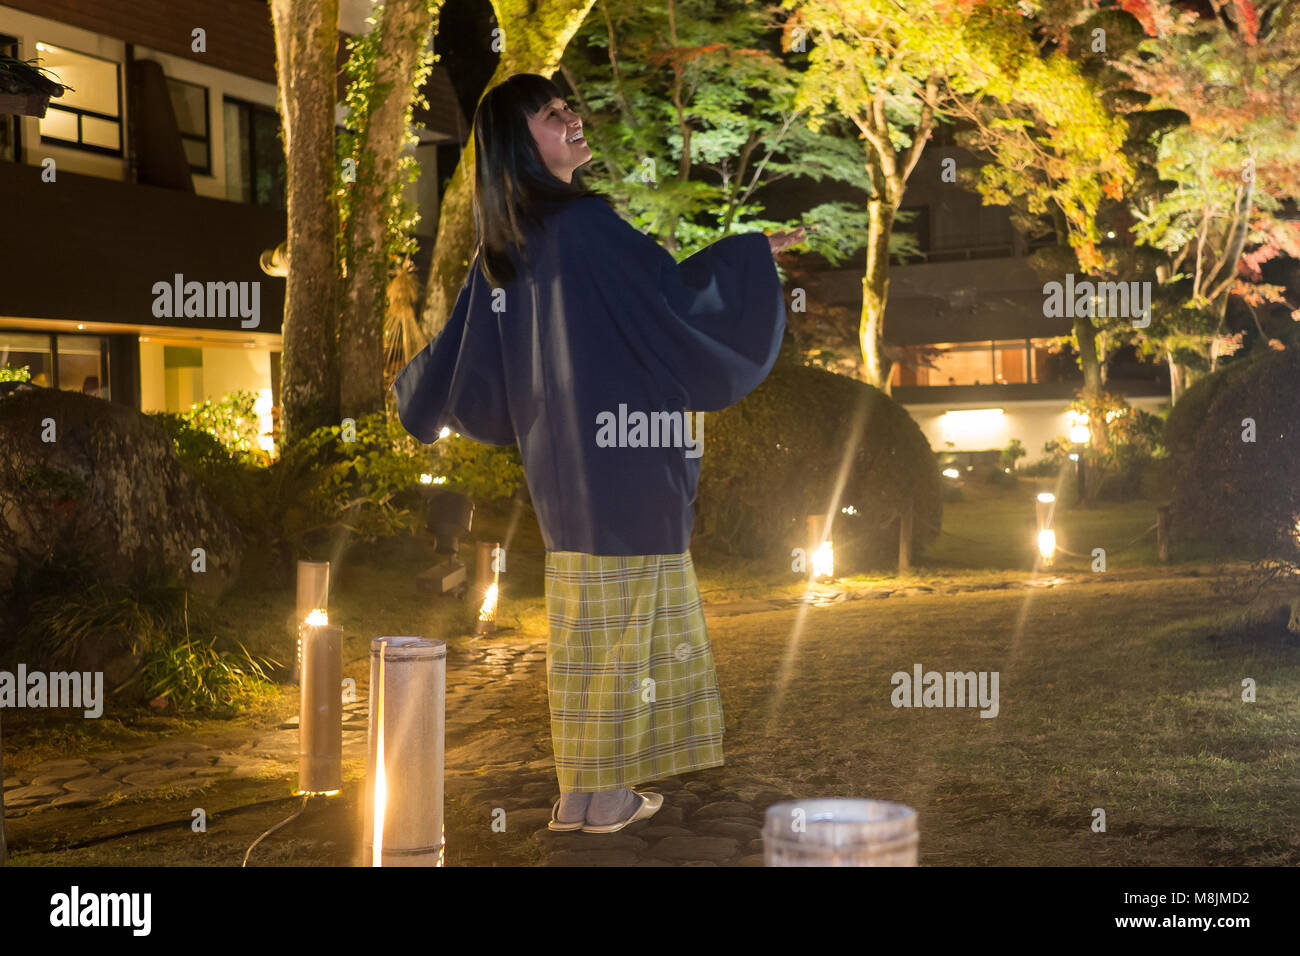 Belle jeune femme dans un yukata se promenant dans un jardin japonais Banque D'Images